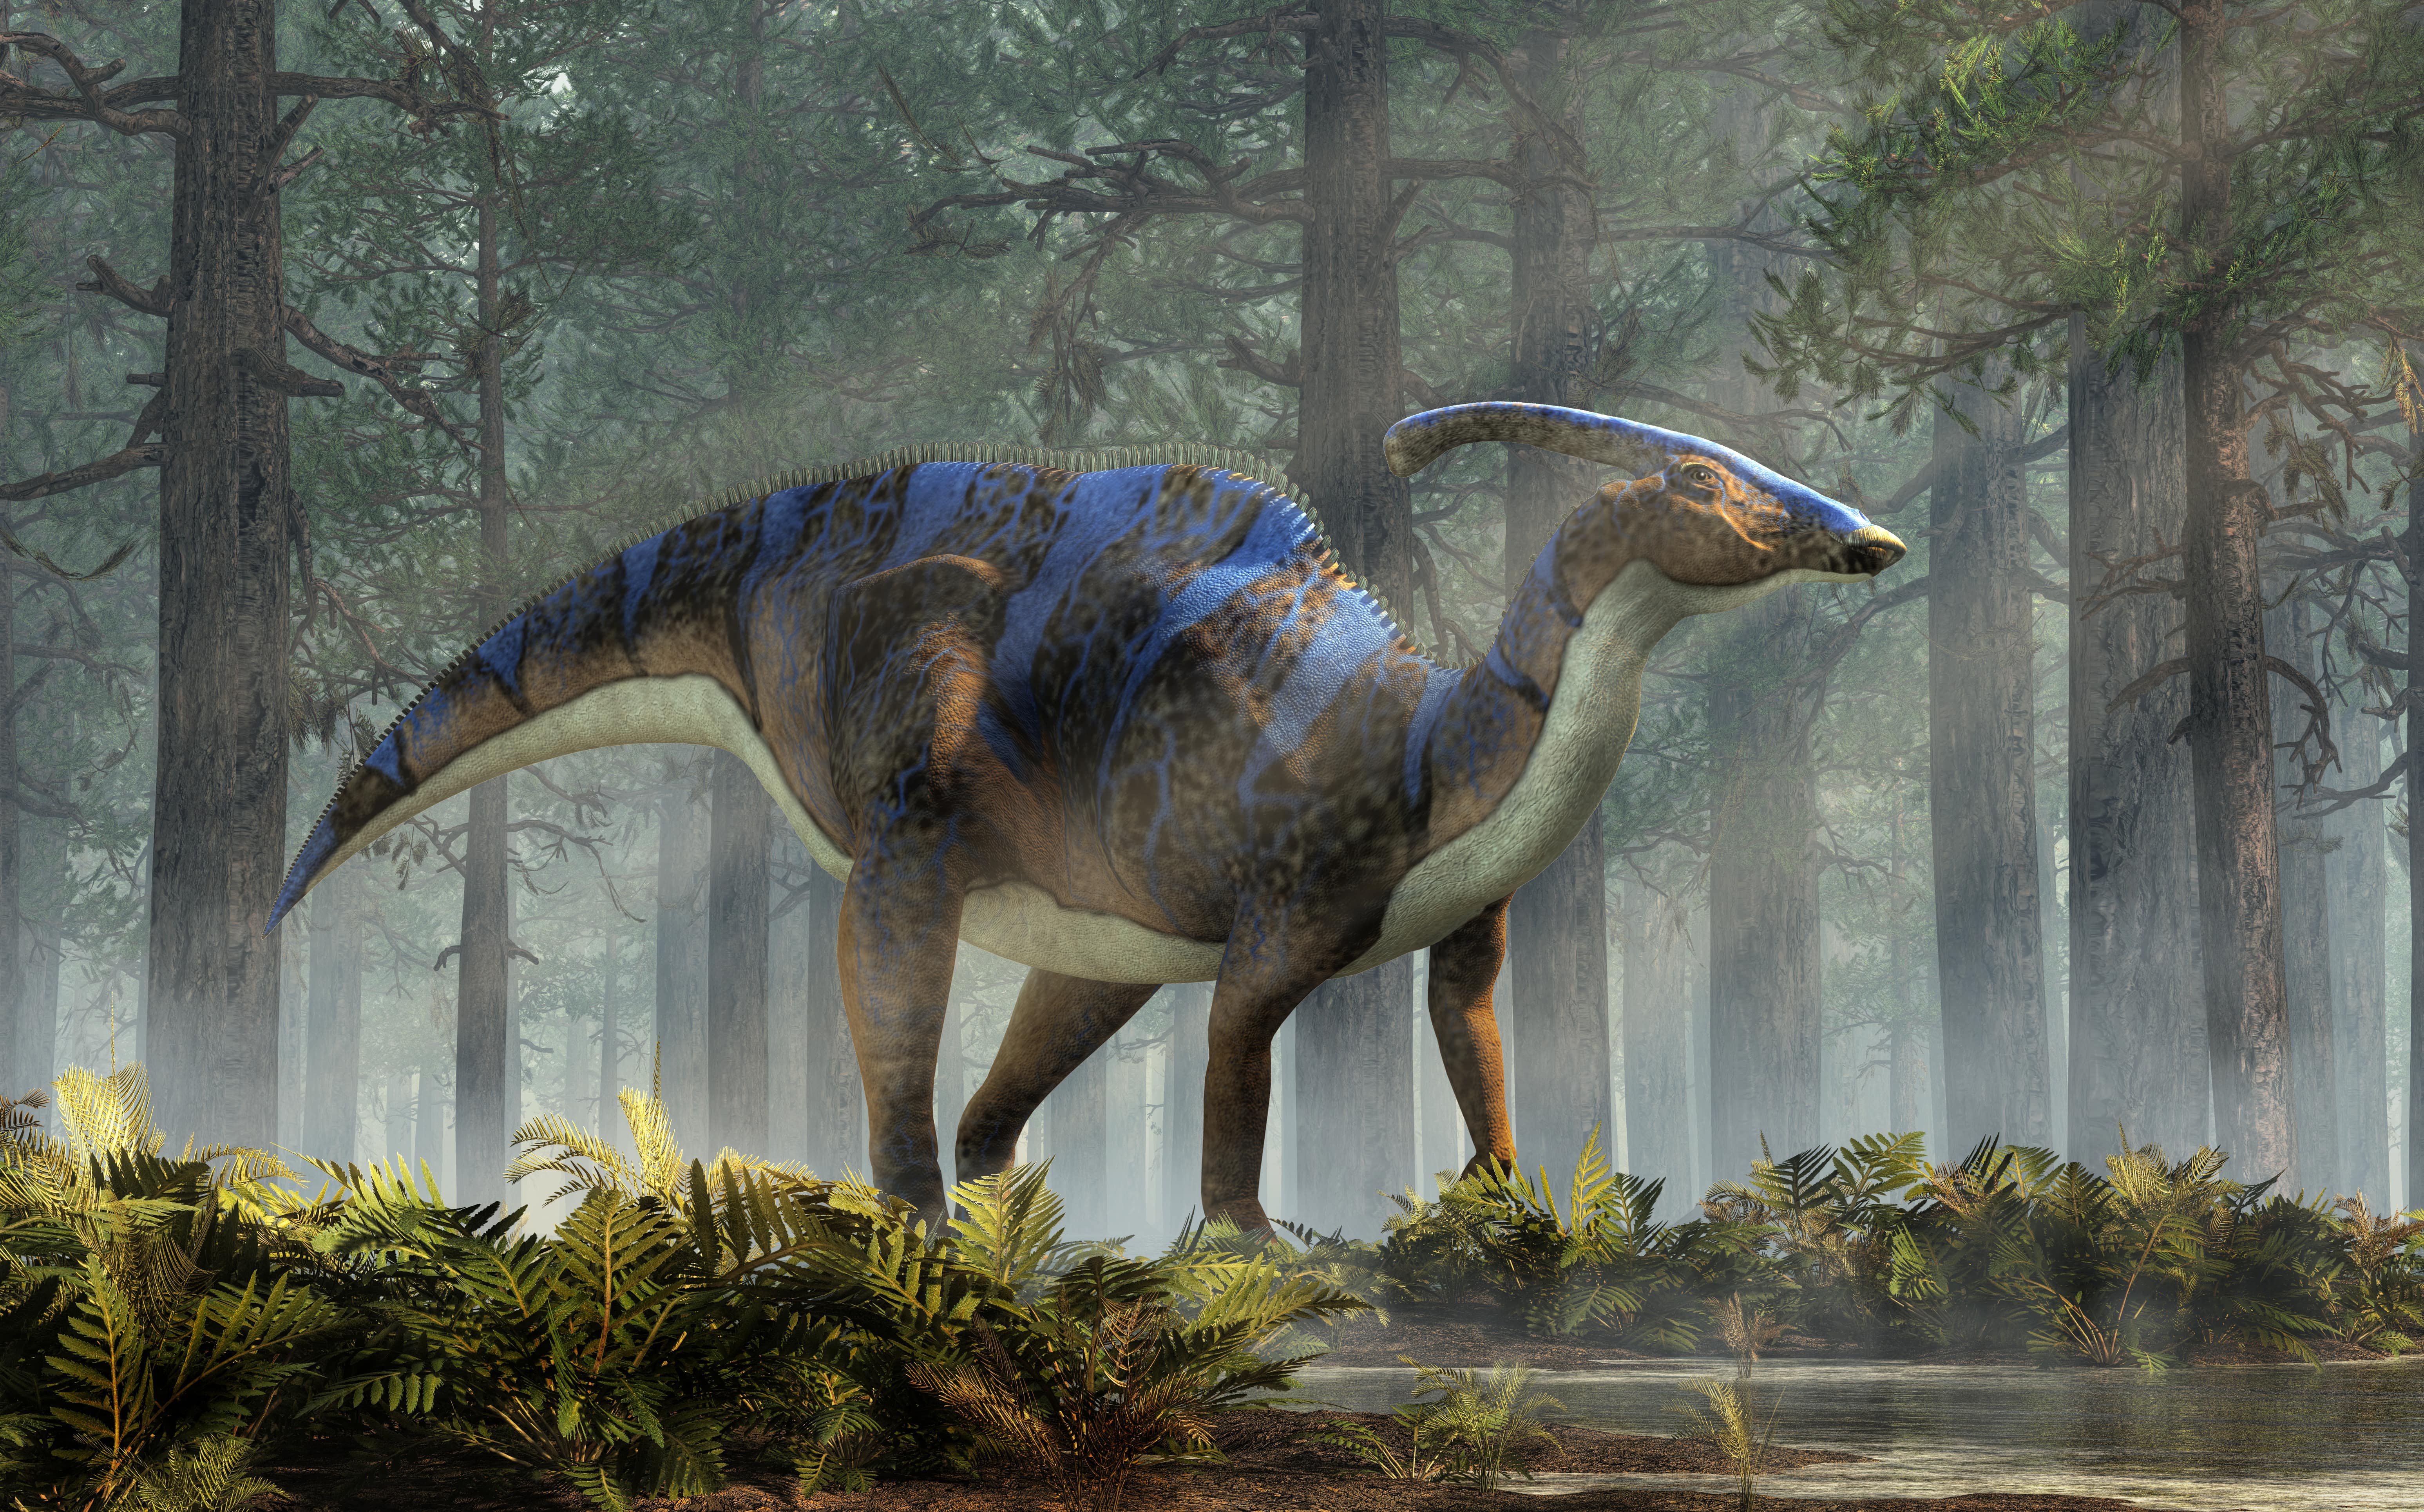 Le Parasaurolophus pesait environ 2,5 tonnes. © Daniel, Adobe Stock